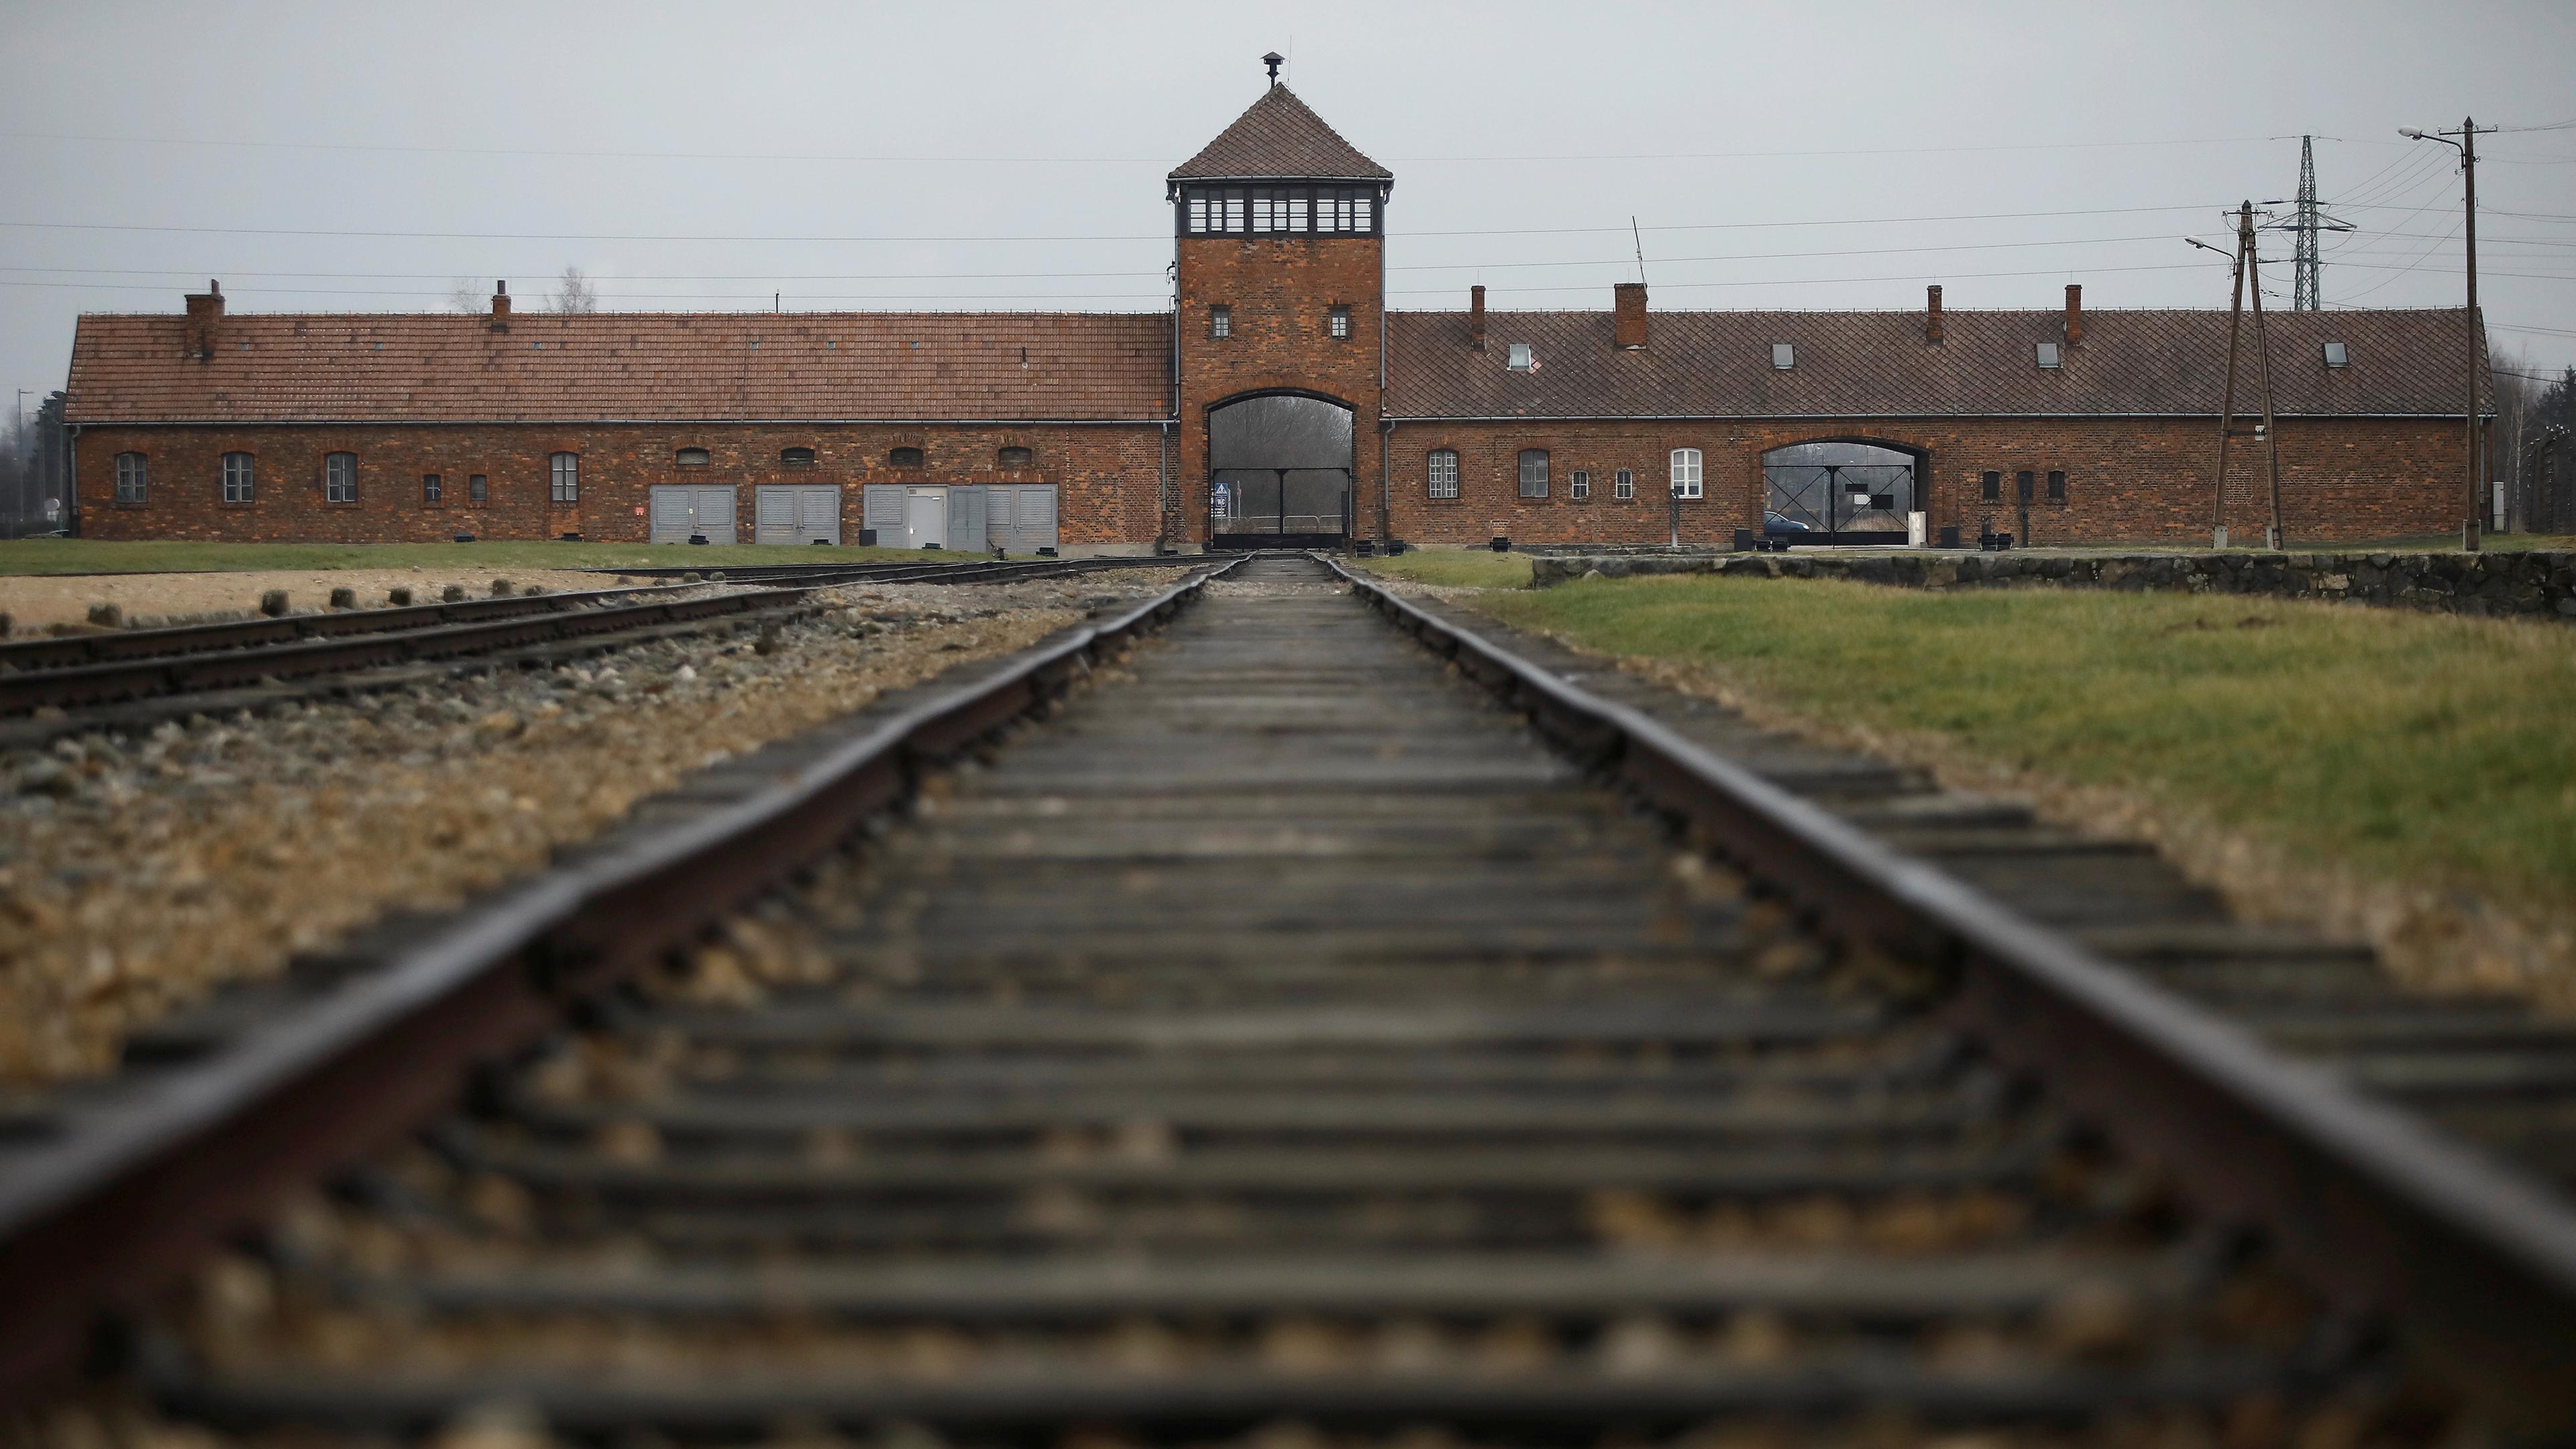 Konzentrationslager Auschwitz II-Birkenau, aufgenommen am 27.01.2021